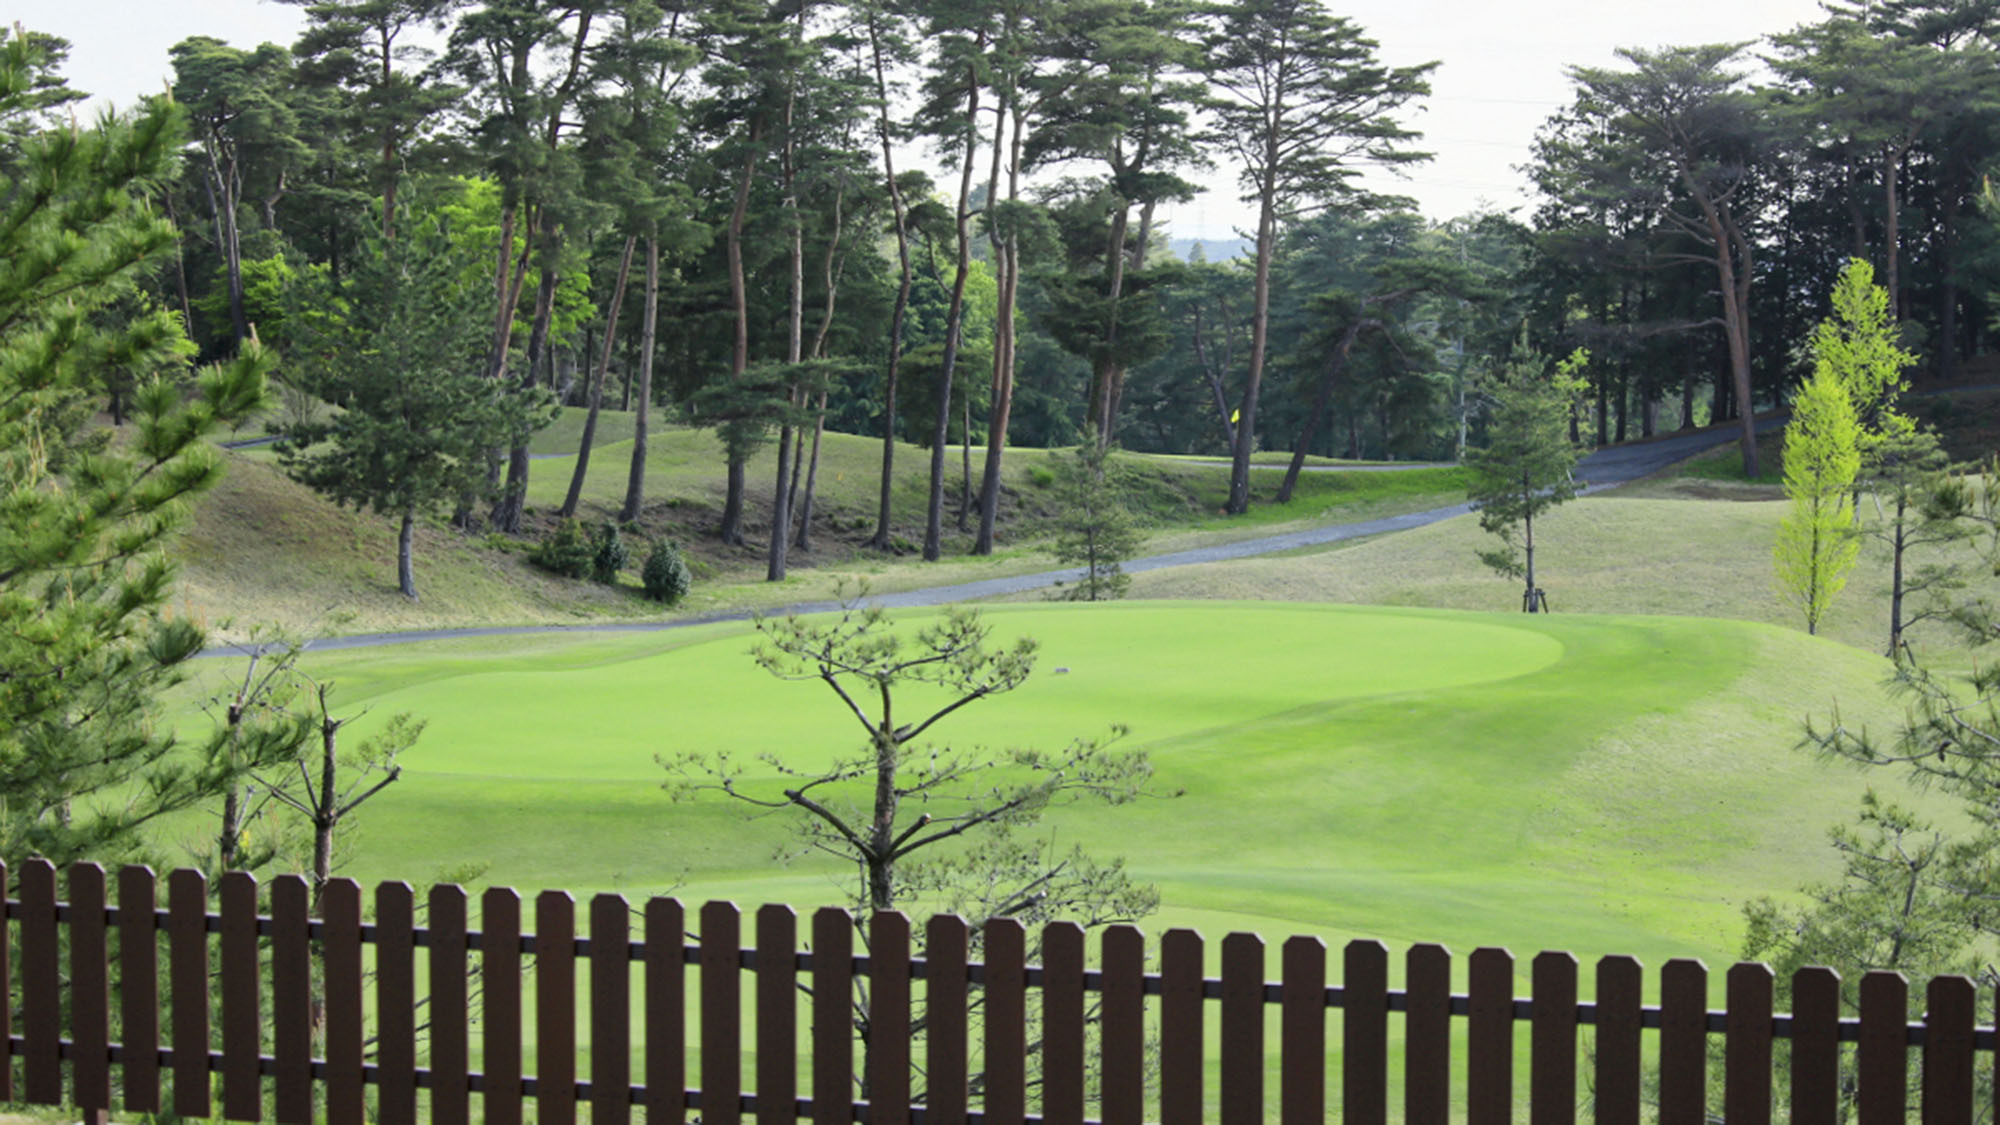 ・【ゴルフ場】お庭からの眺め。ゴルフコースに面した稀なロケーションです。